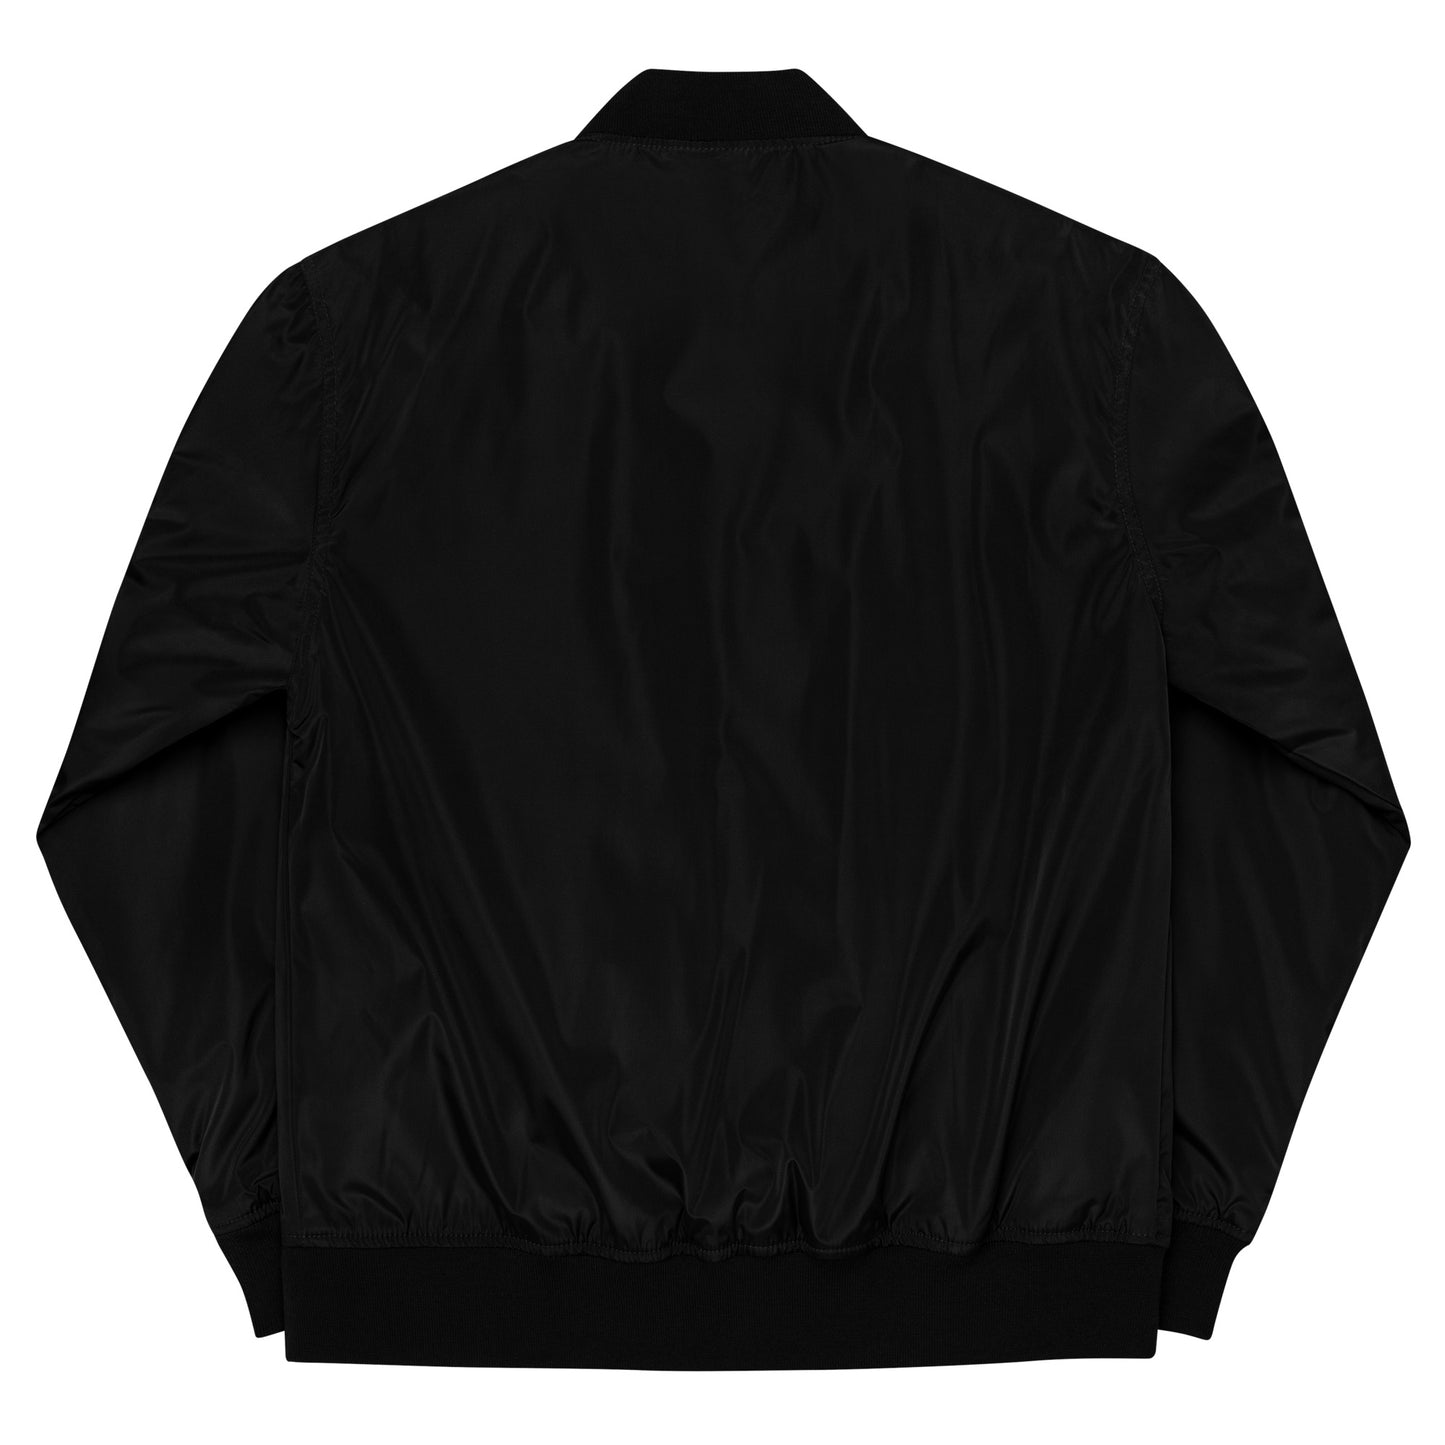 Menkrav Initiate bomber jacket black